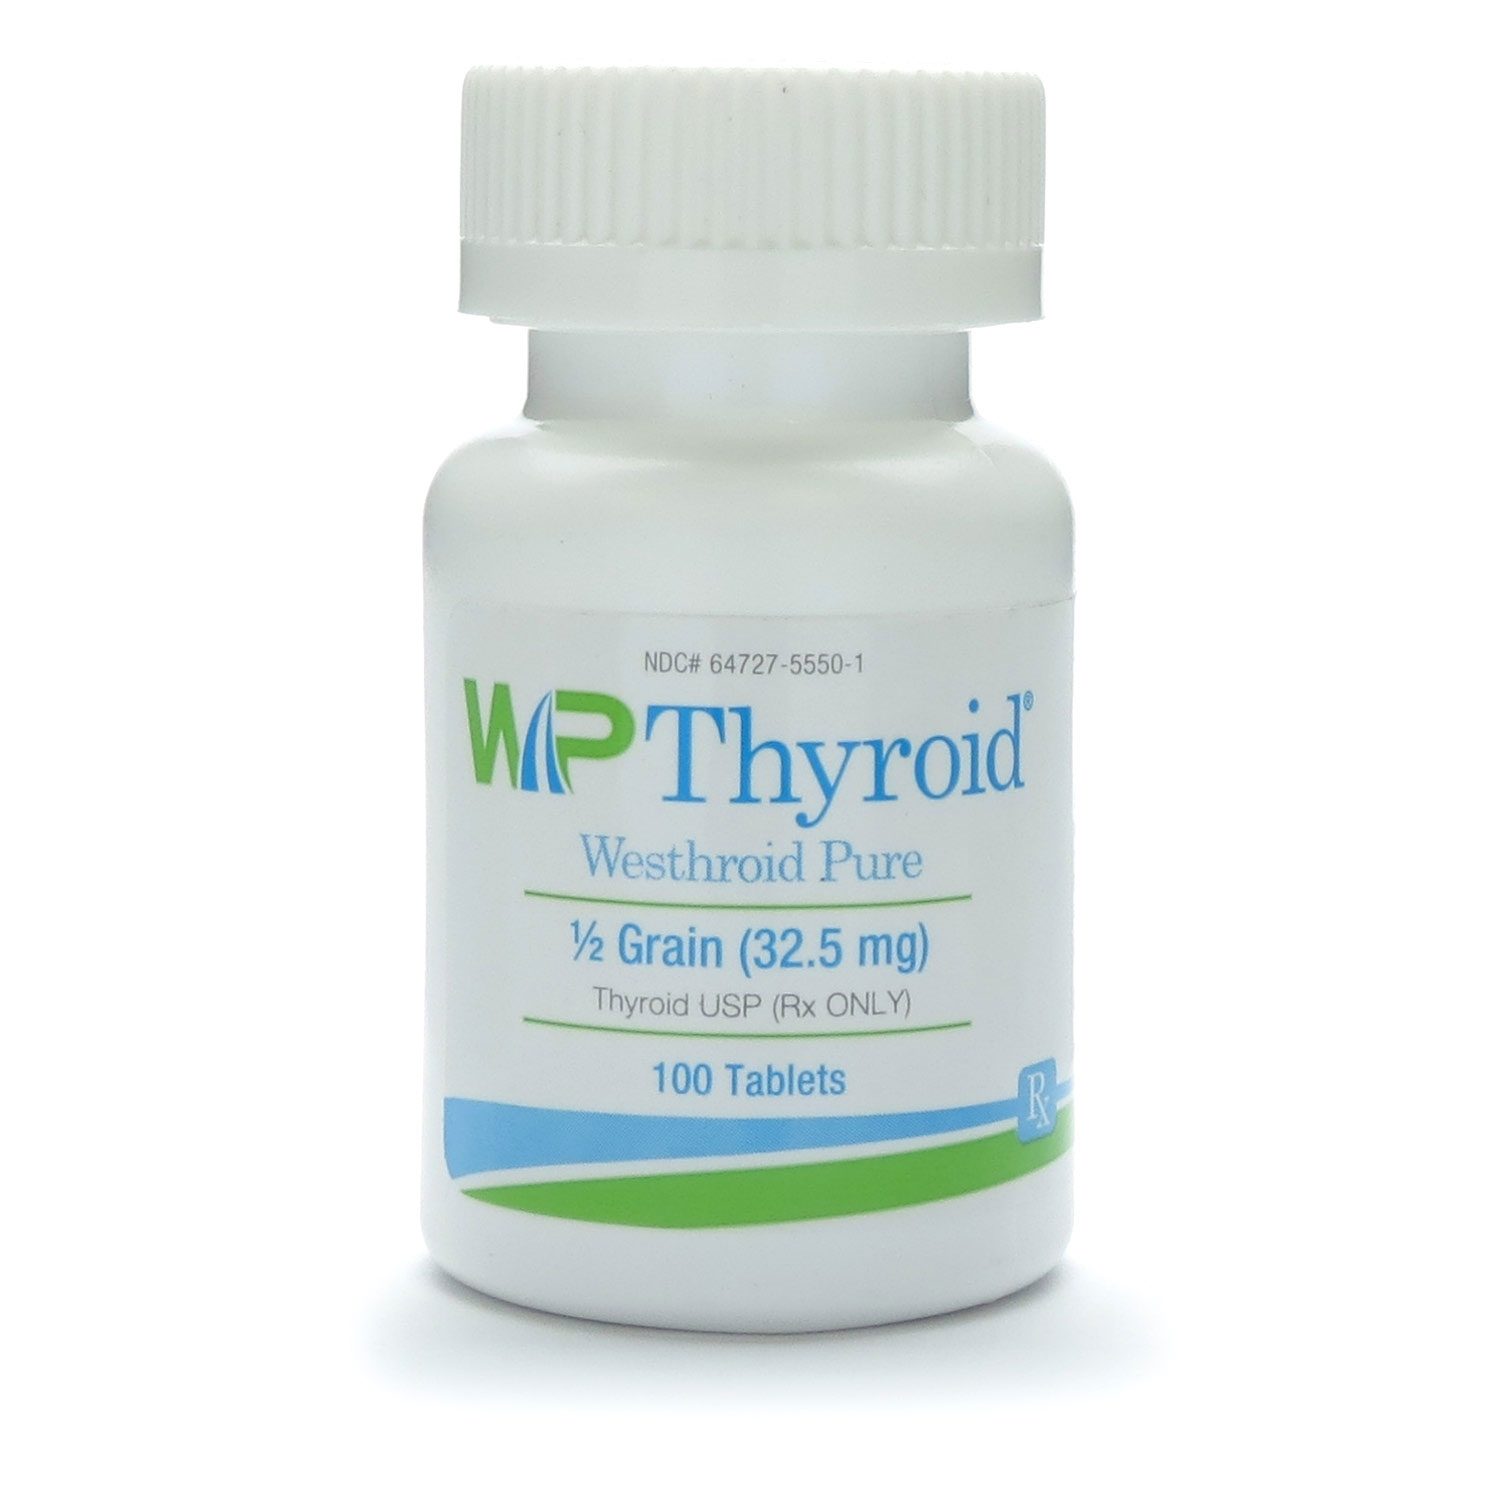 wp thyroid